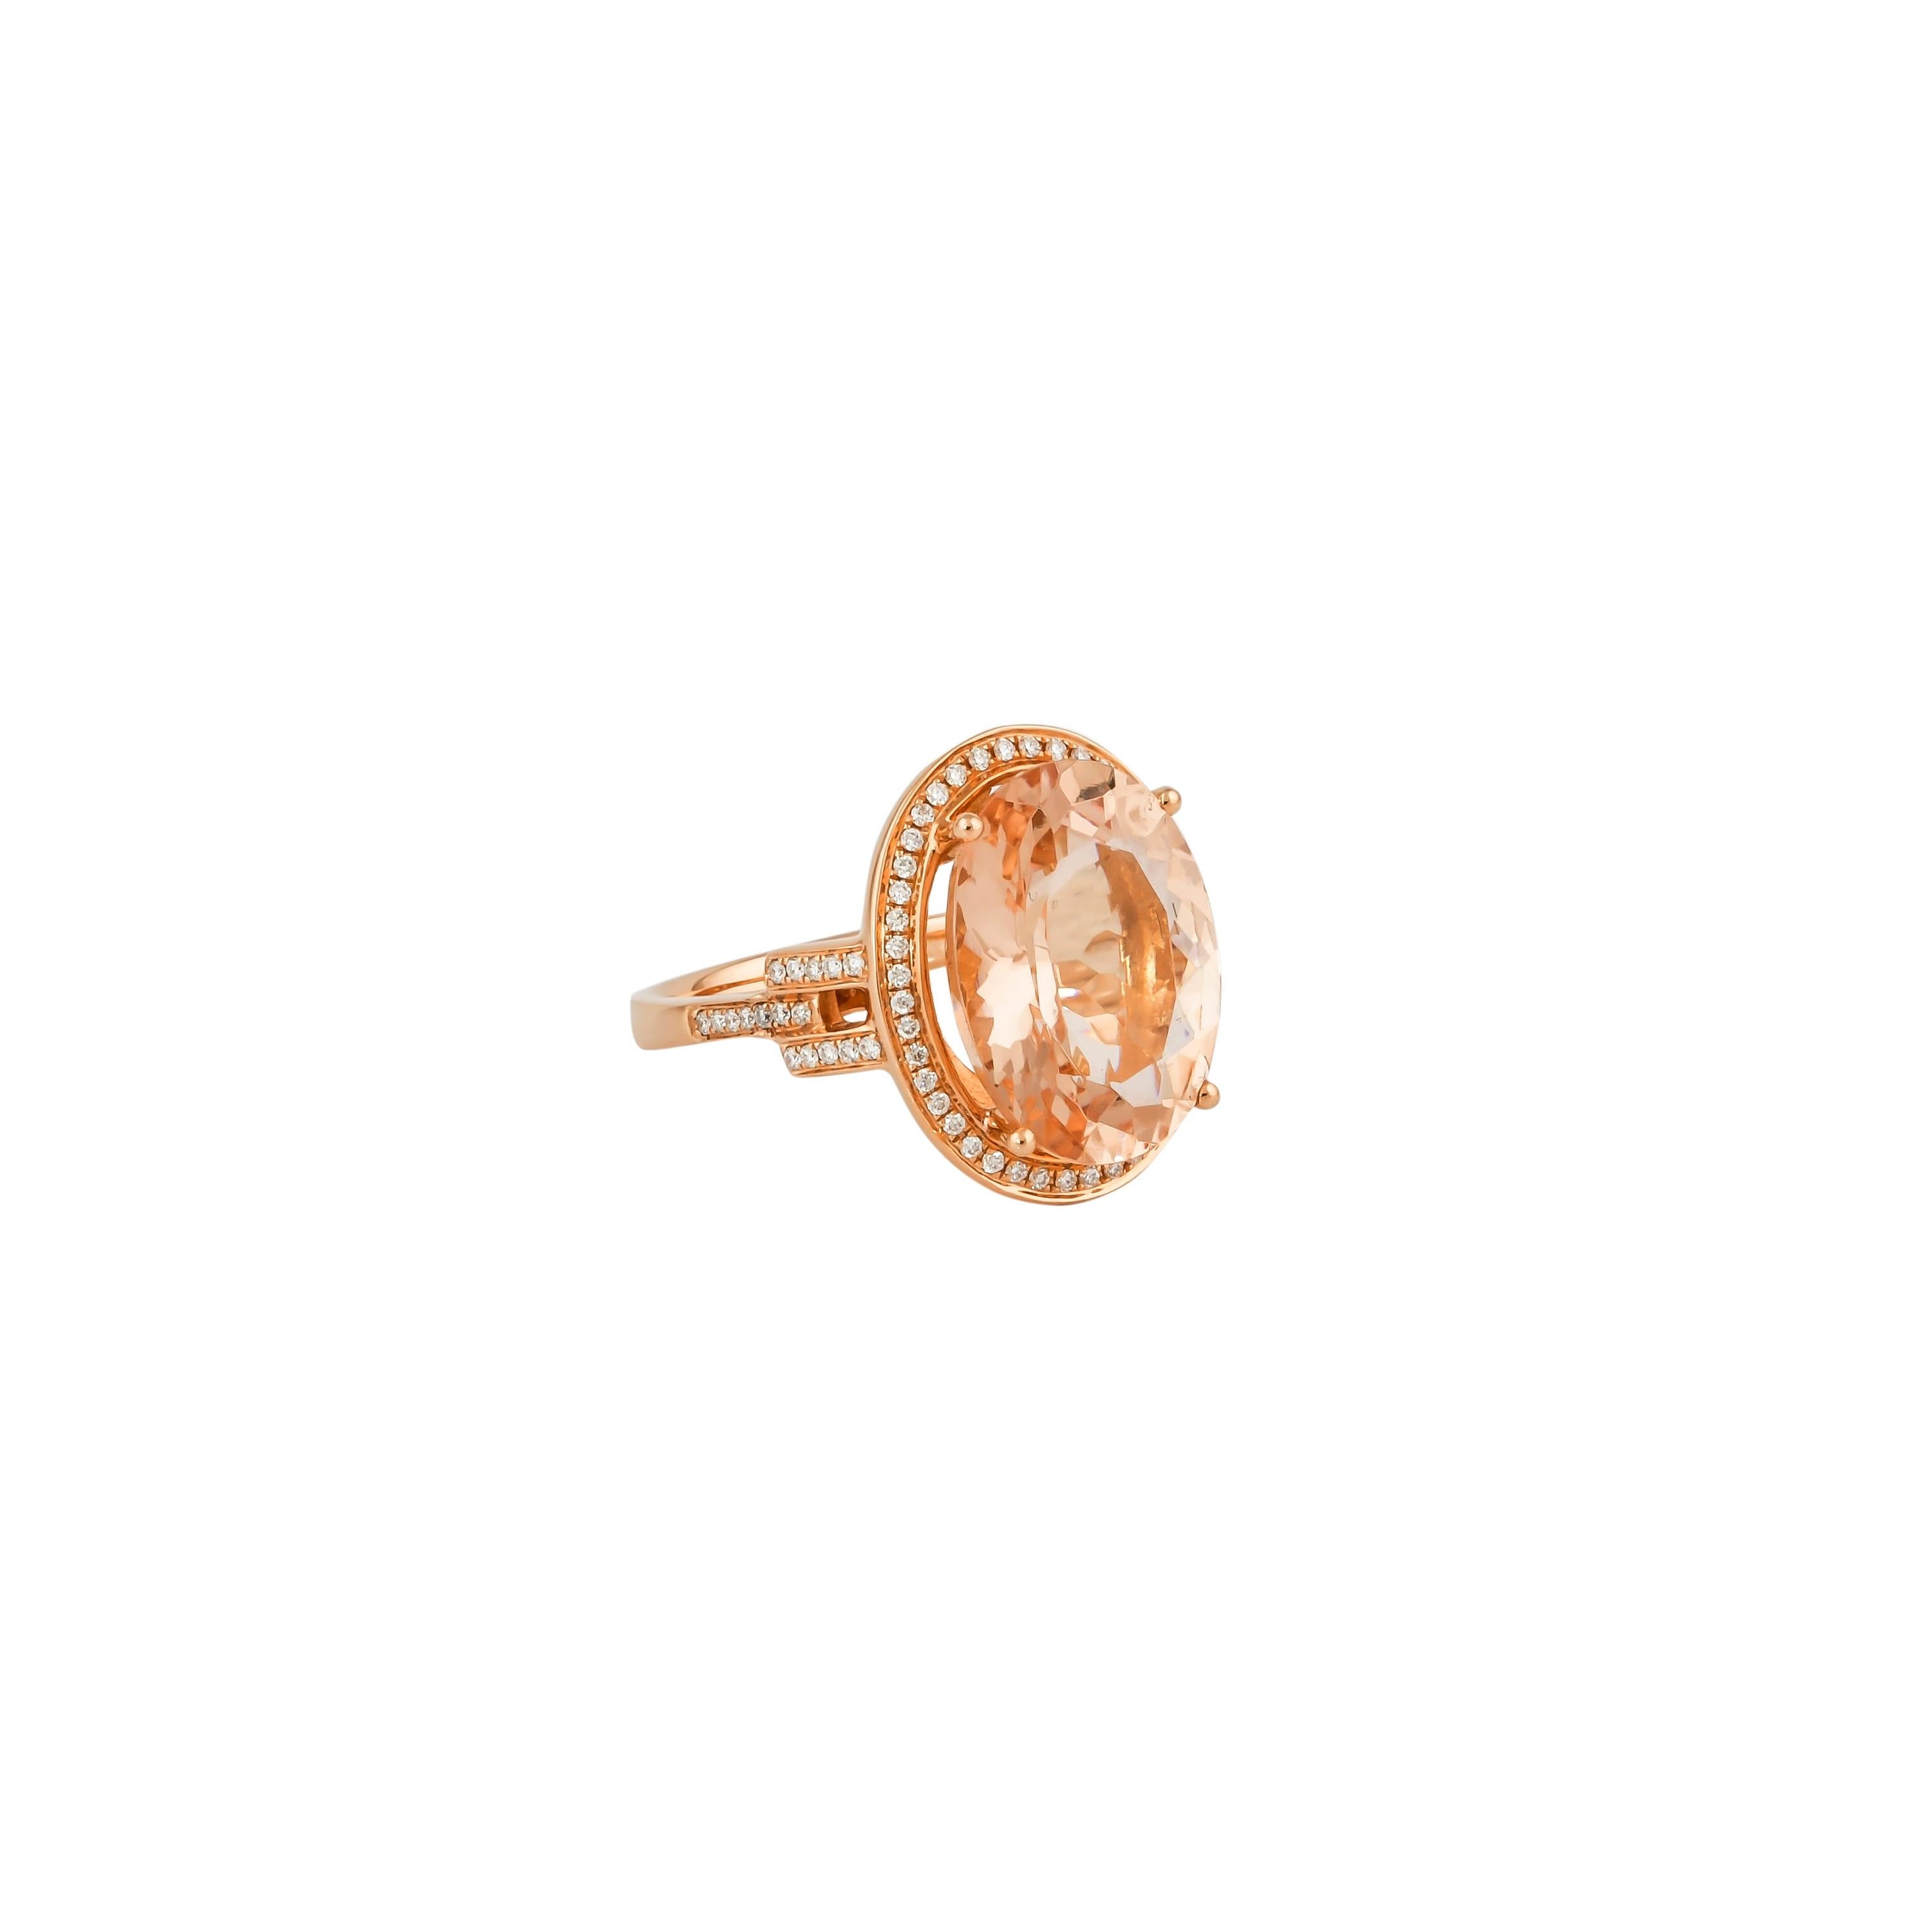 Diese Kollektion bietet eine Reihe von prächtigen Morganiten! Diese mit Diamanten besetzten Ringe sind aus Roségold gefertigt und wirken klassisch und elegant. 

Klassischer Morganit-Ring aus 18 Karat Roségold mit Diamanten. 

Morganit: 7,82 Karat